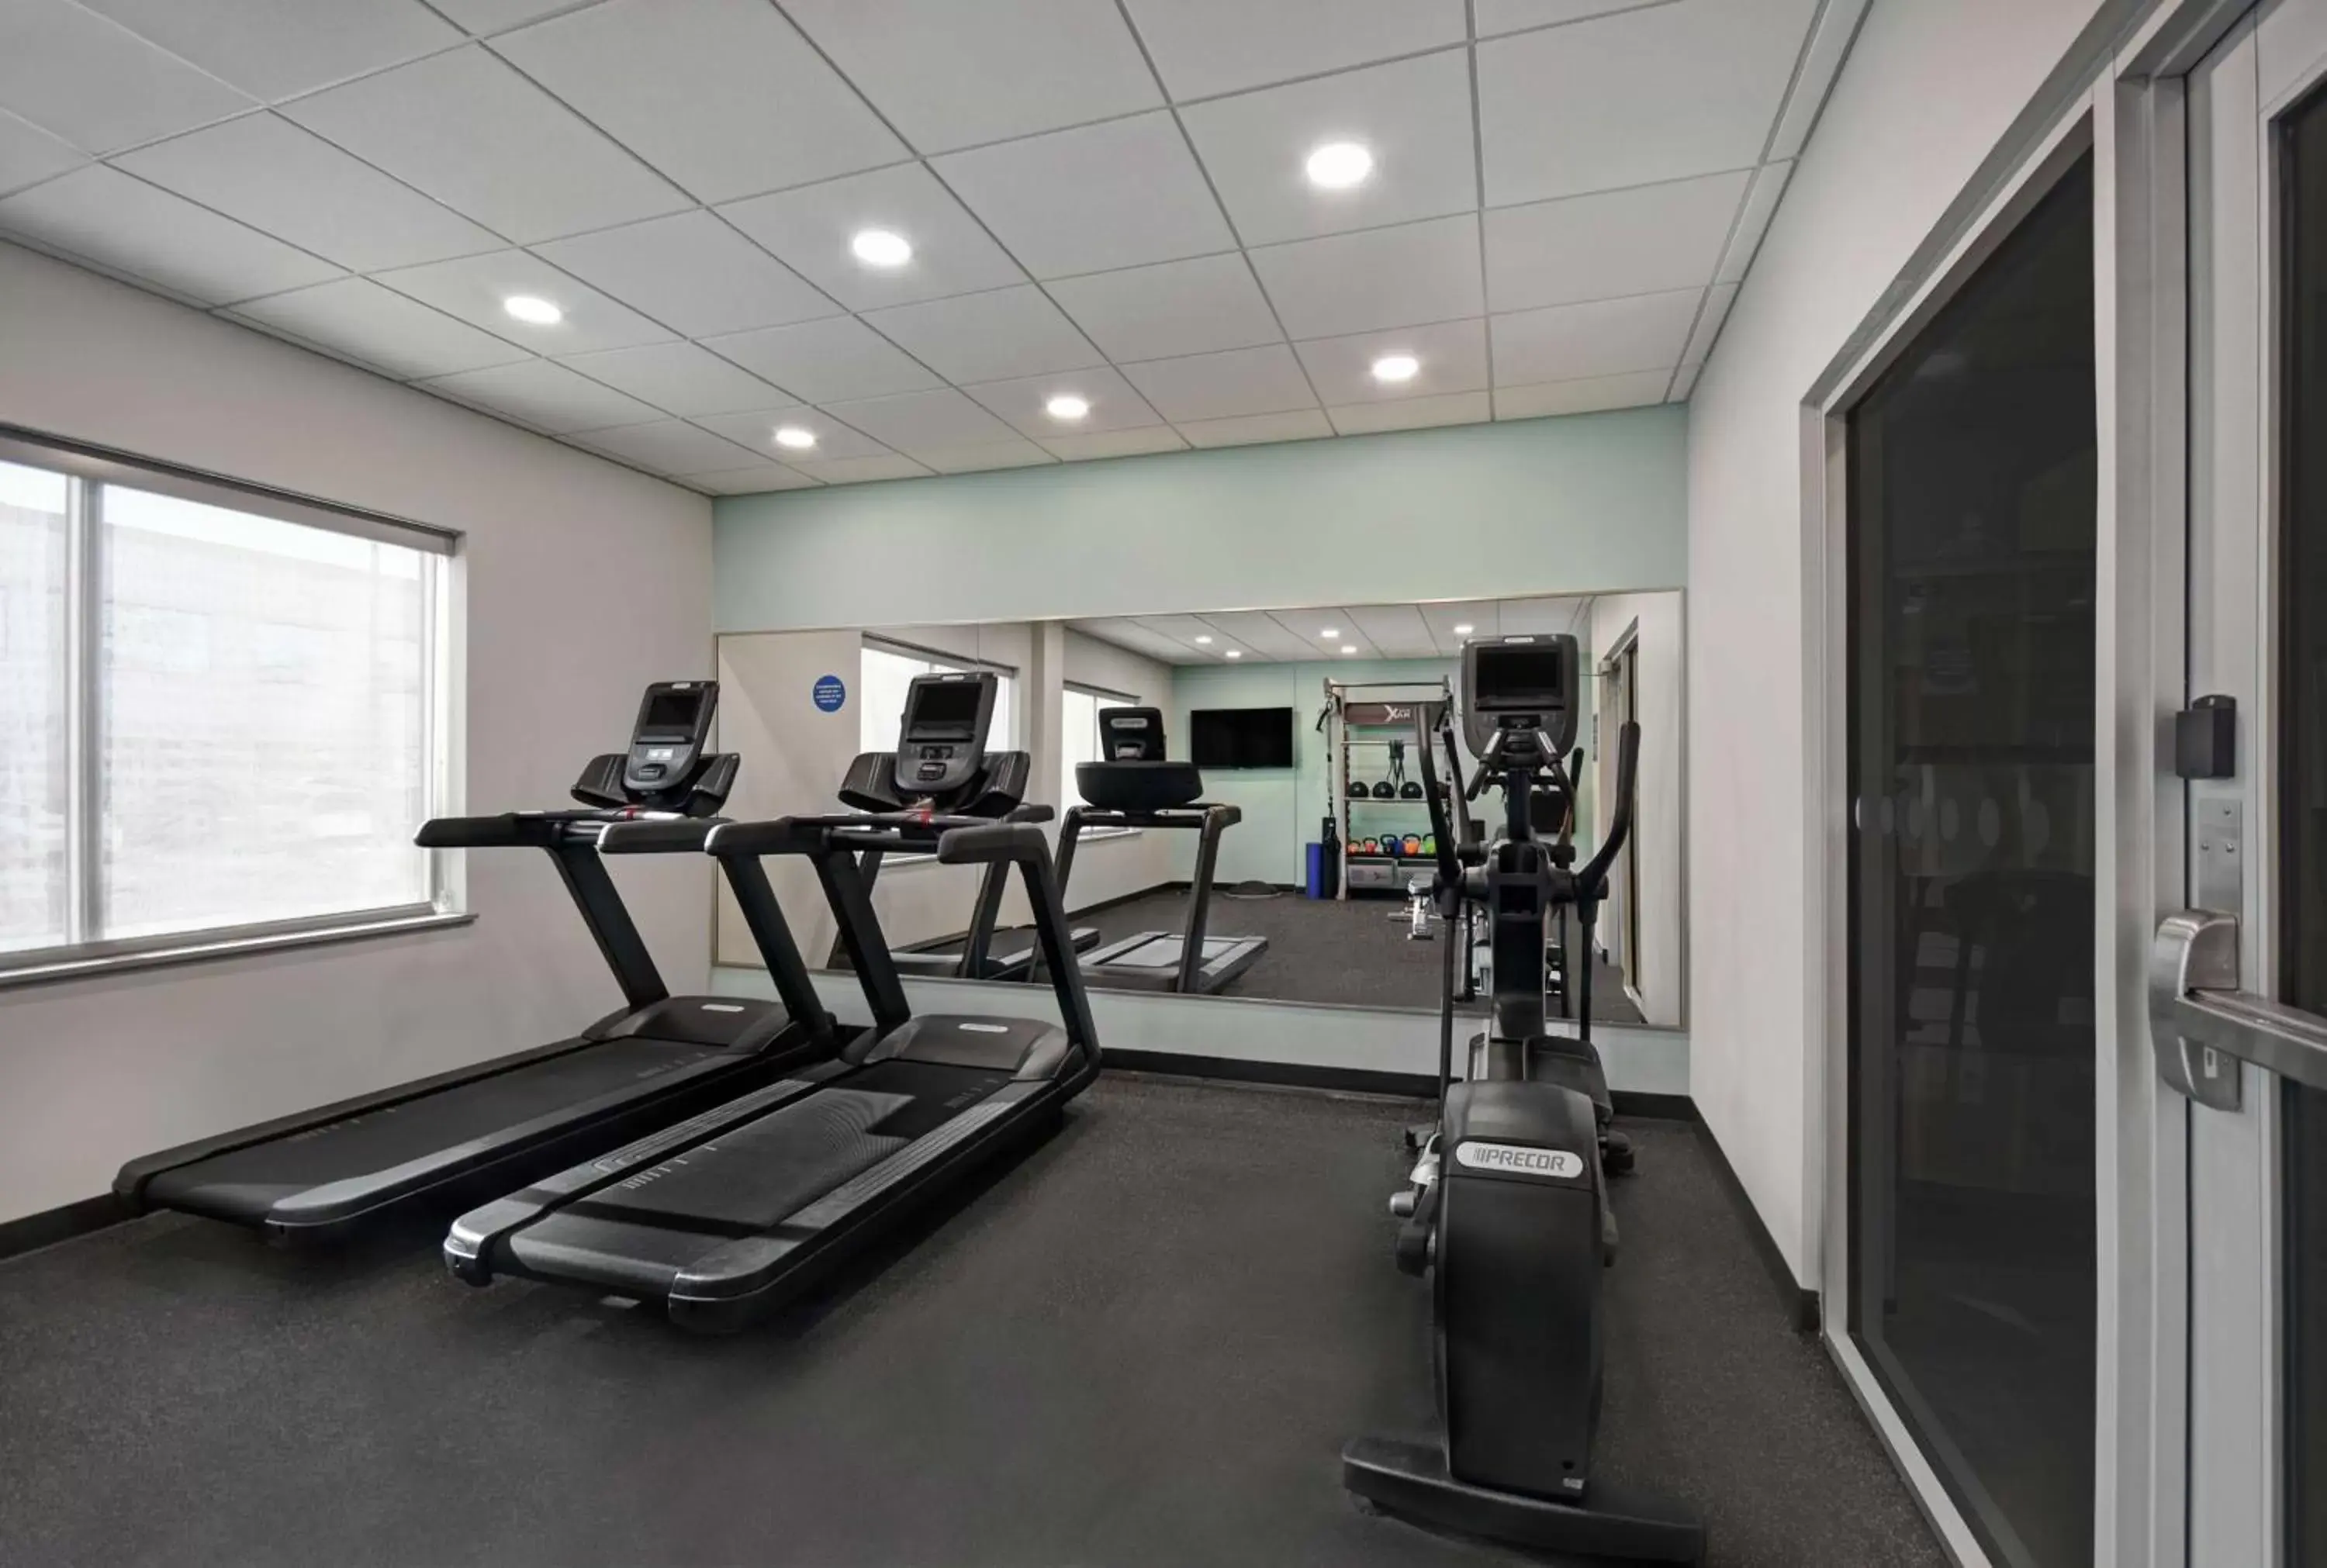 Fitness centre/facilities, Fitness Center/Facilities in Tru By Hilton Burlington